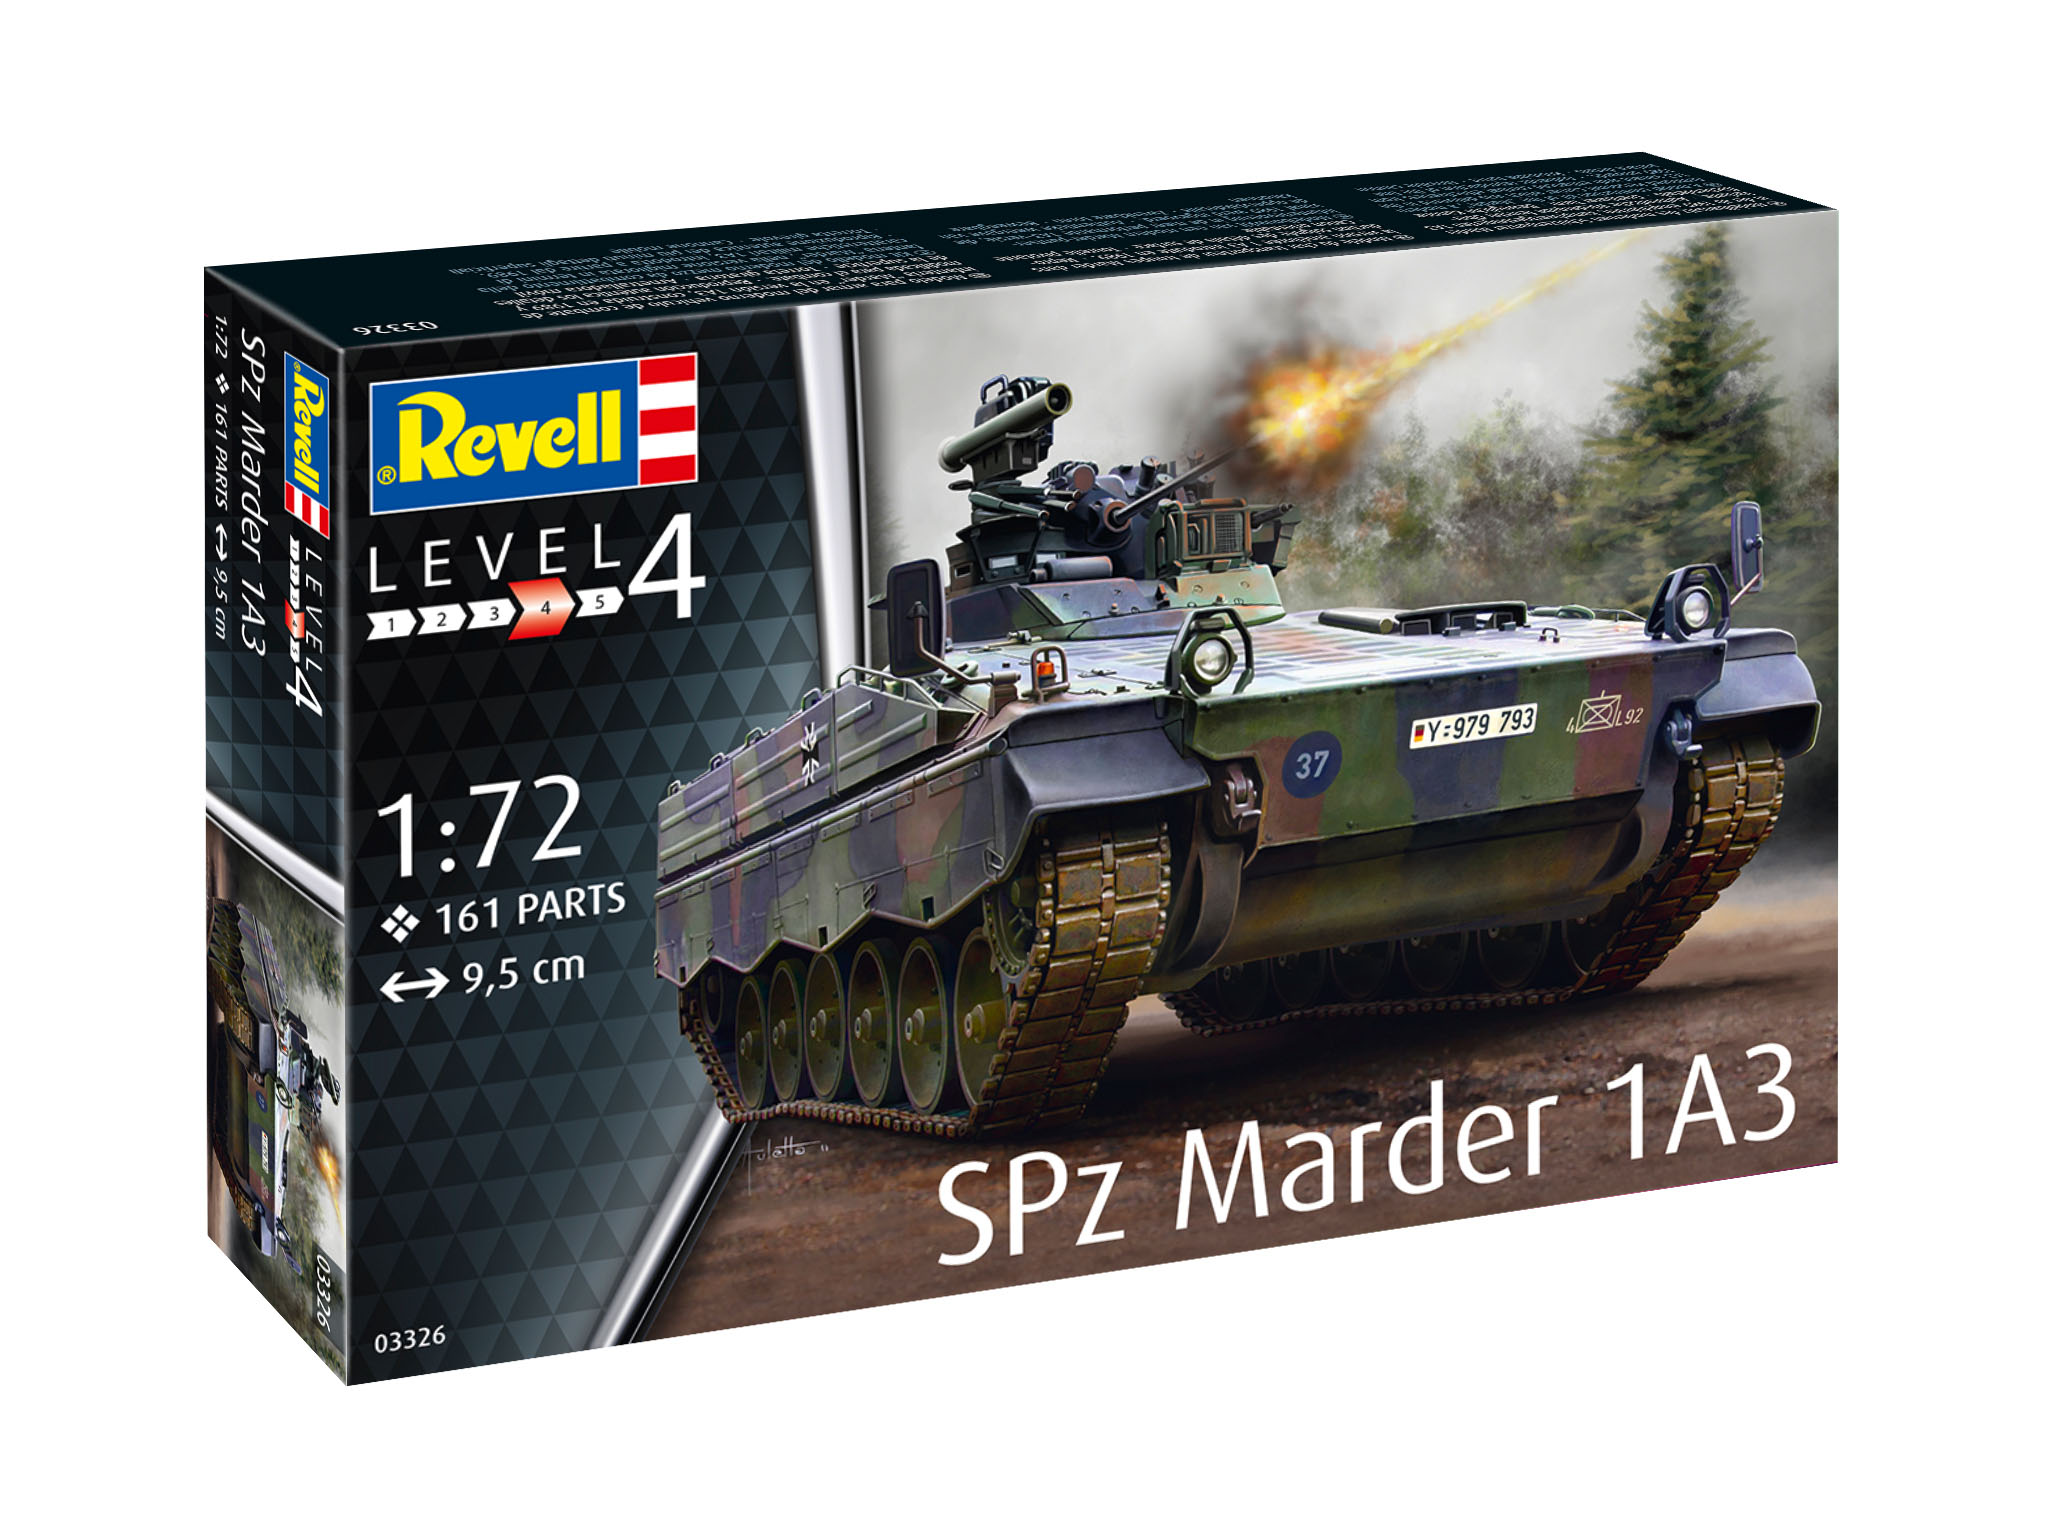 revell-03326-SPz-Marder-1A3-Bundeswehr